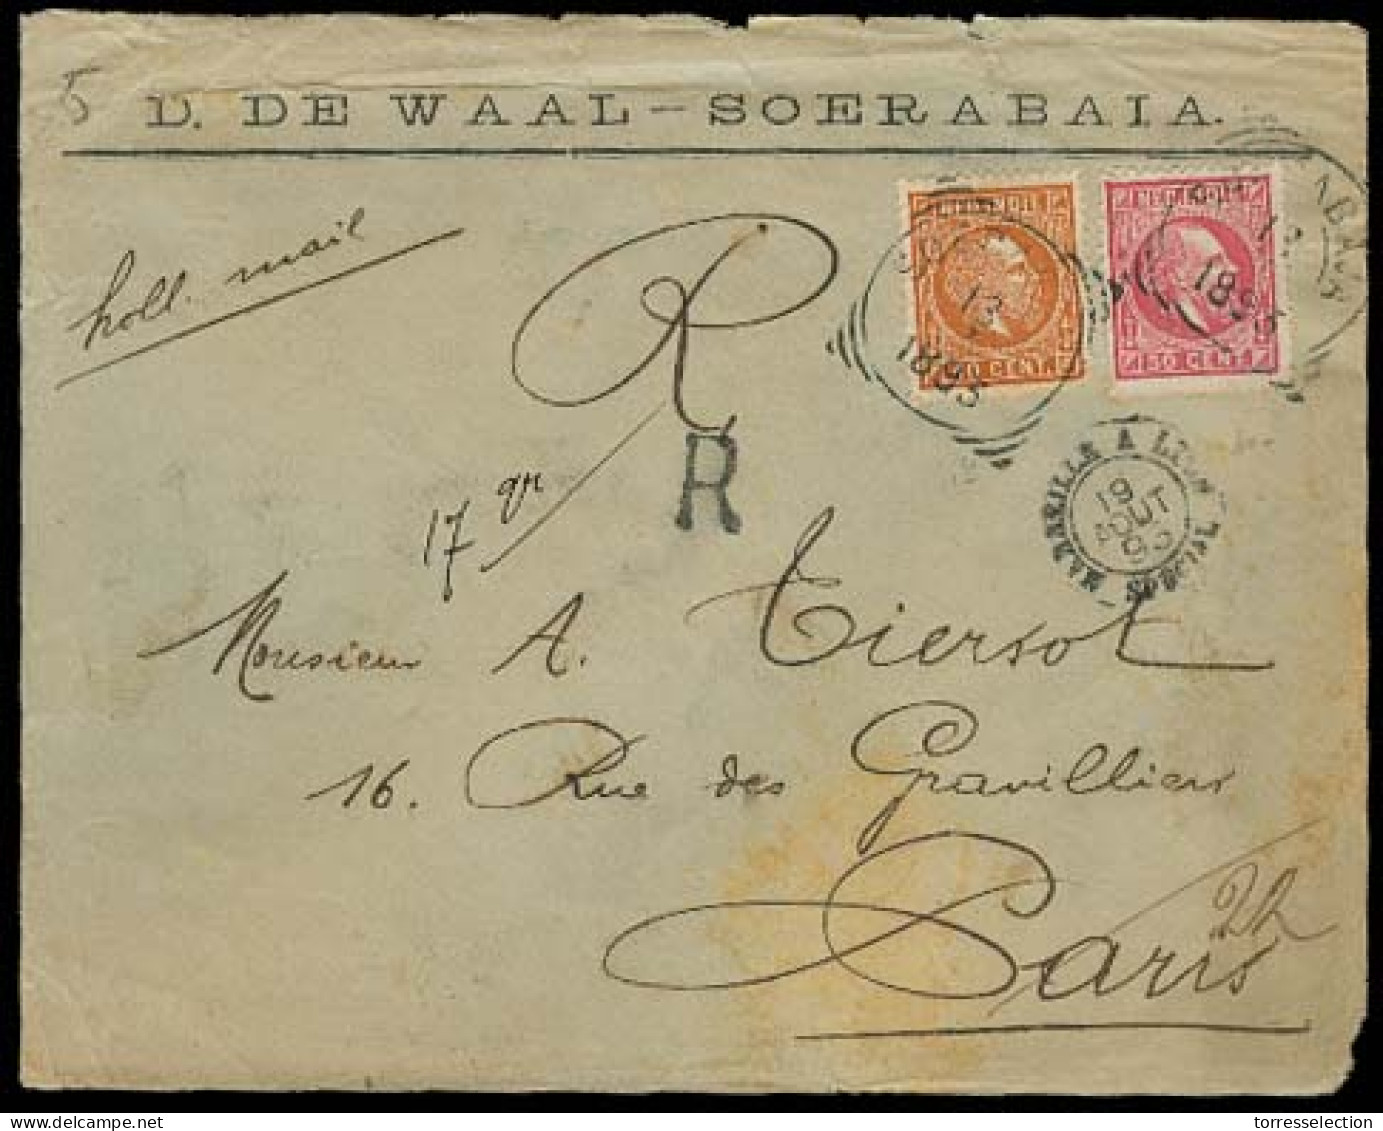 DUTCH INDIES. 1893. Soerabaia - France. Registered Env Fkd 10c + 50c Red. Better Fkg. - Indonesië